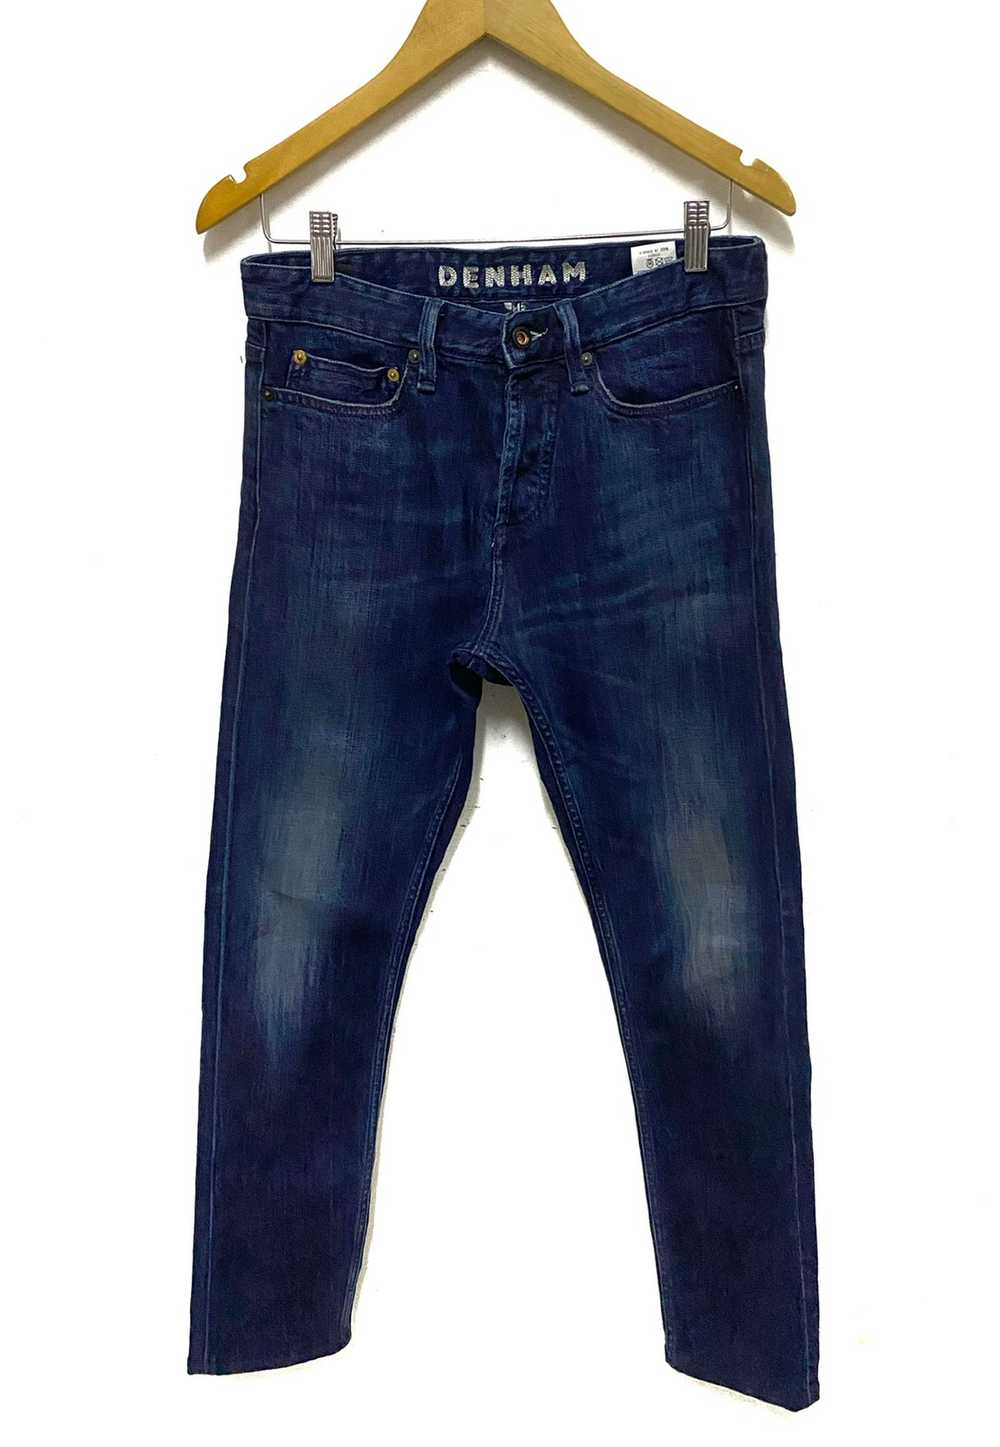 Denham - Denham Razor Slim Fit Selvedge Jeans Mad… - image 1